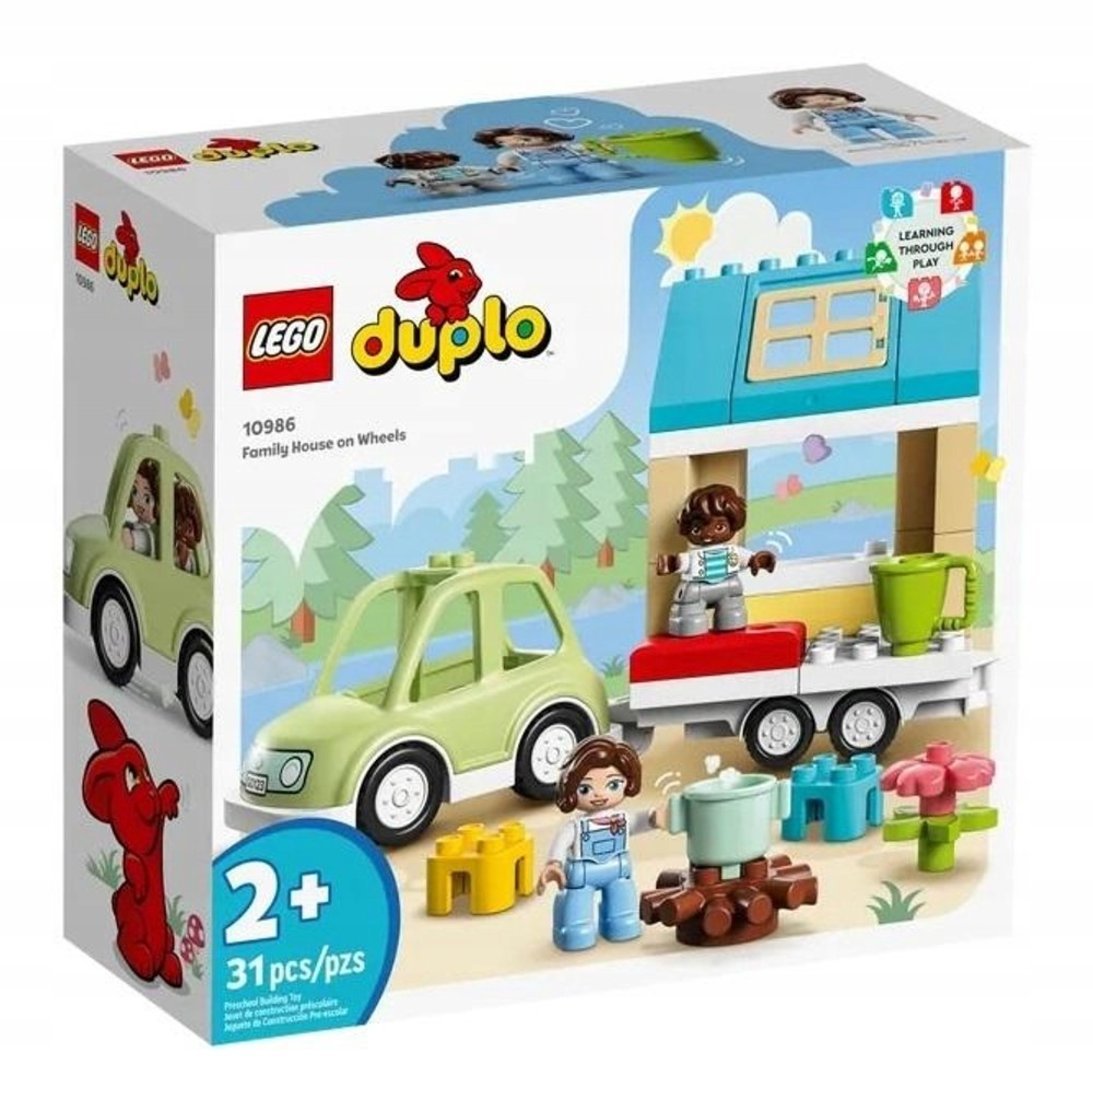 Констр-р LEGO DUPLO Семейный дом на колесах